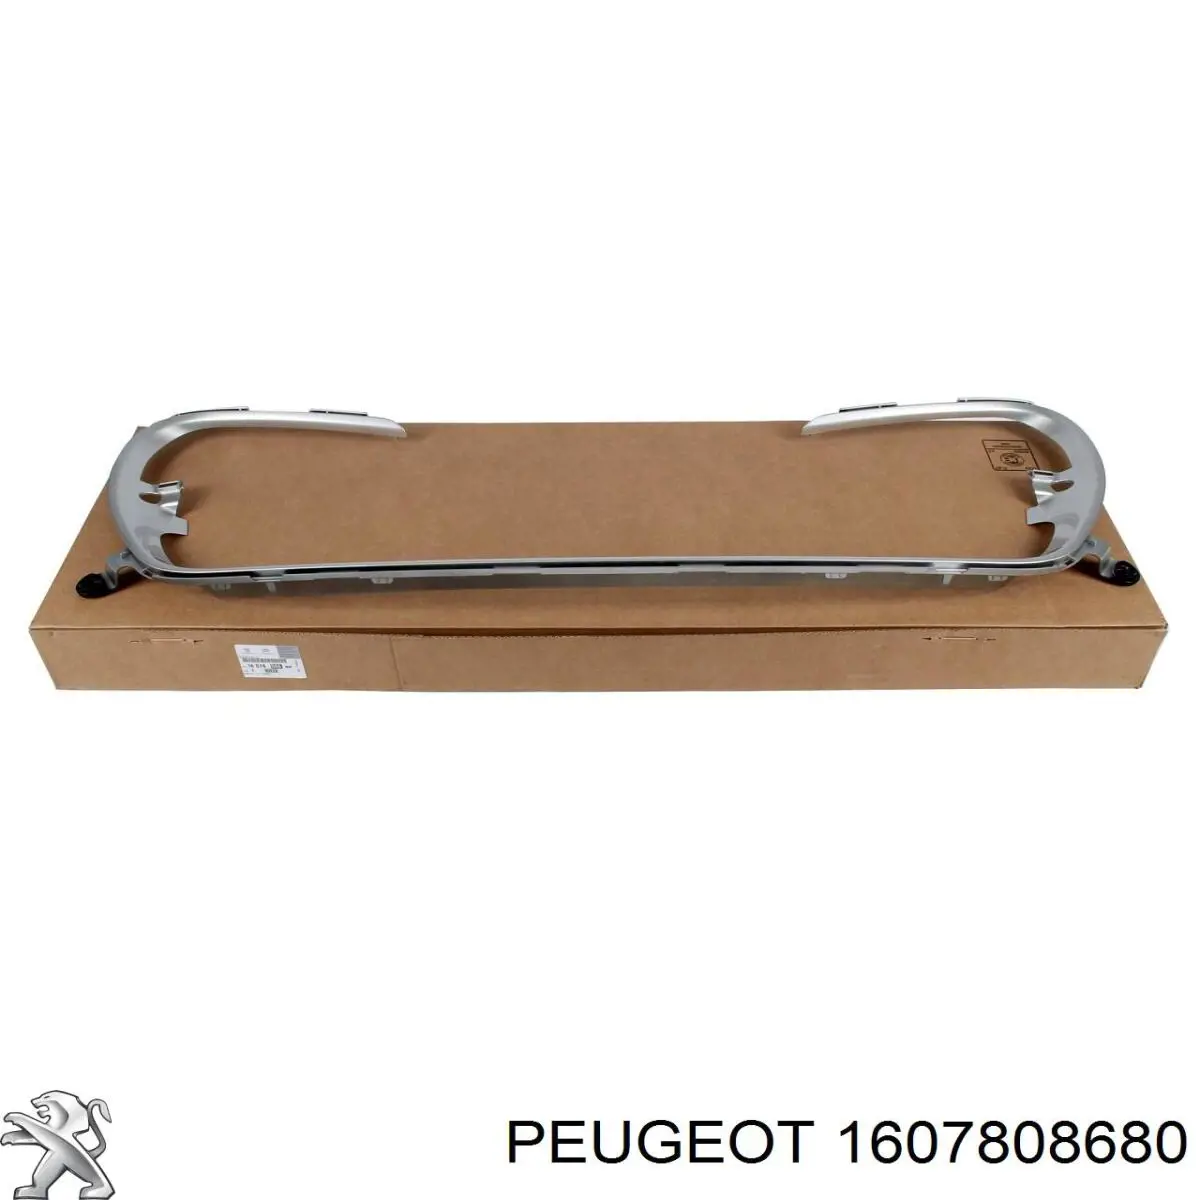 1607808680 Peugeot/Citroen moldura de la parrilla del parachoques delantero